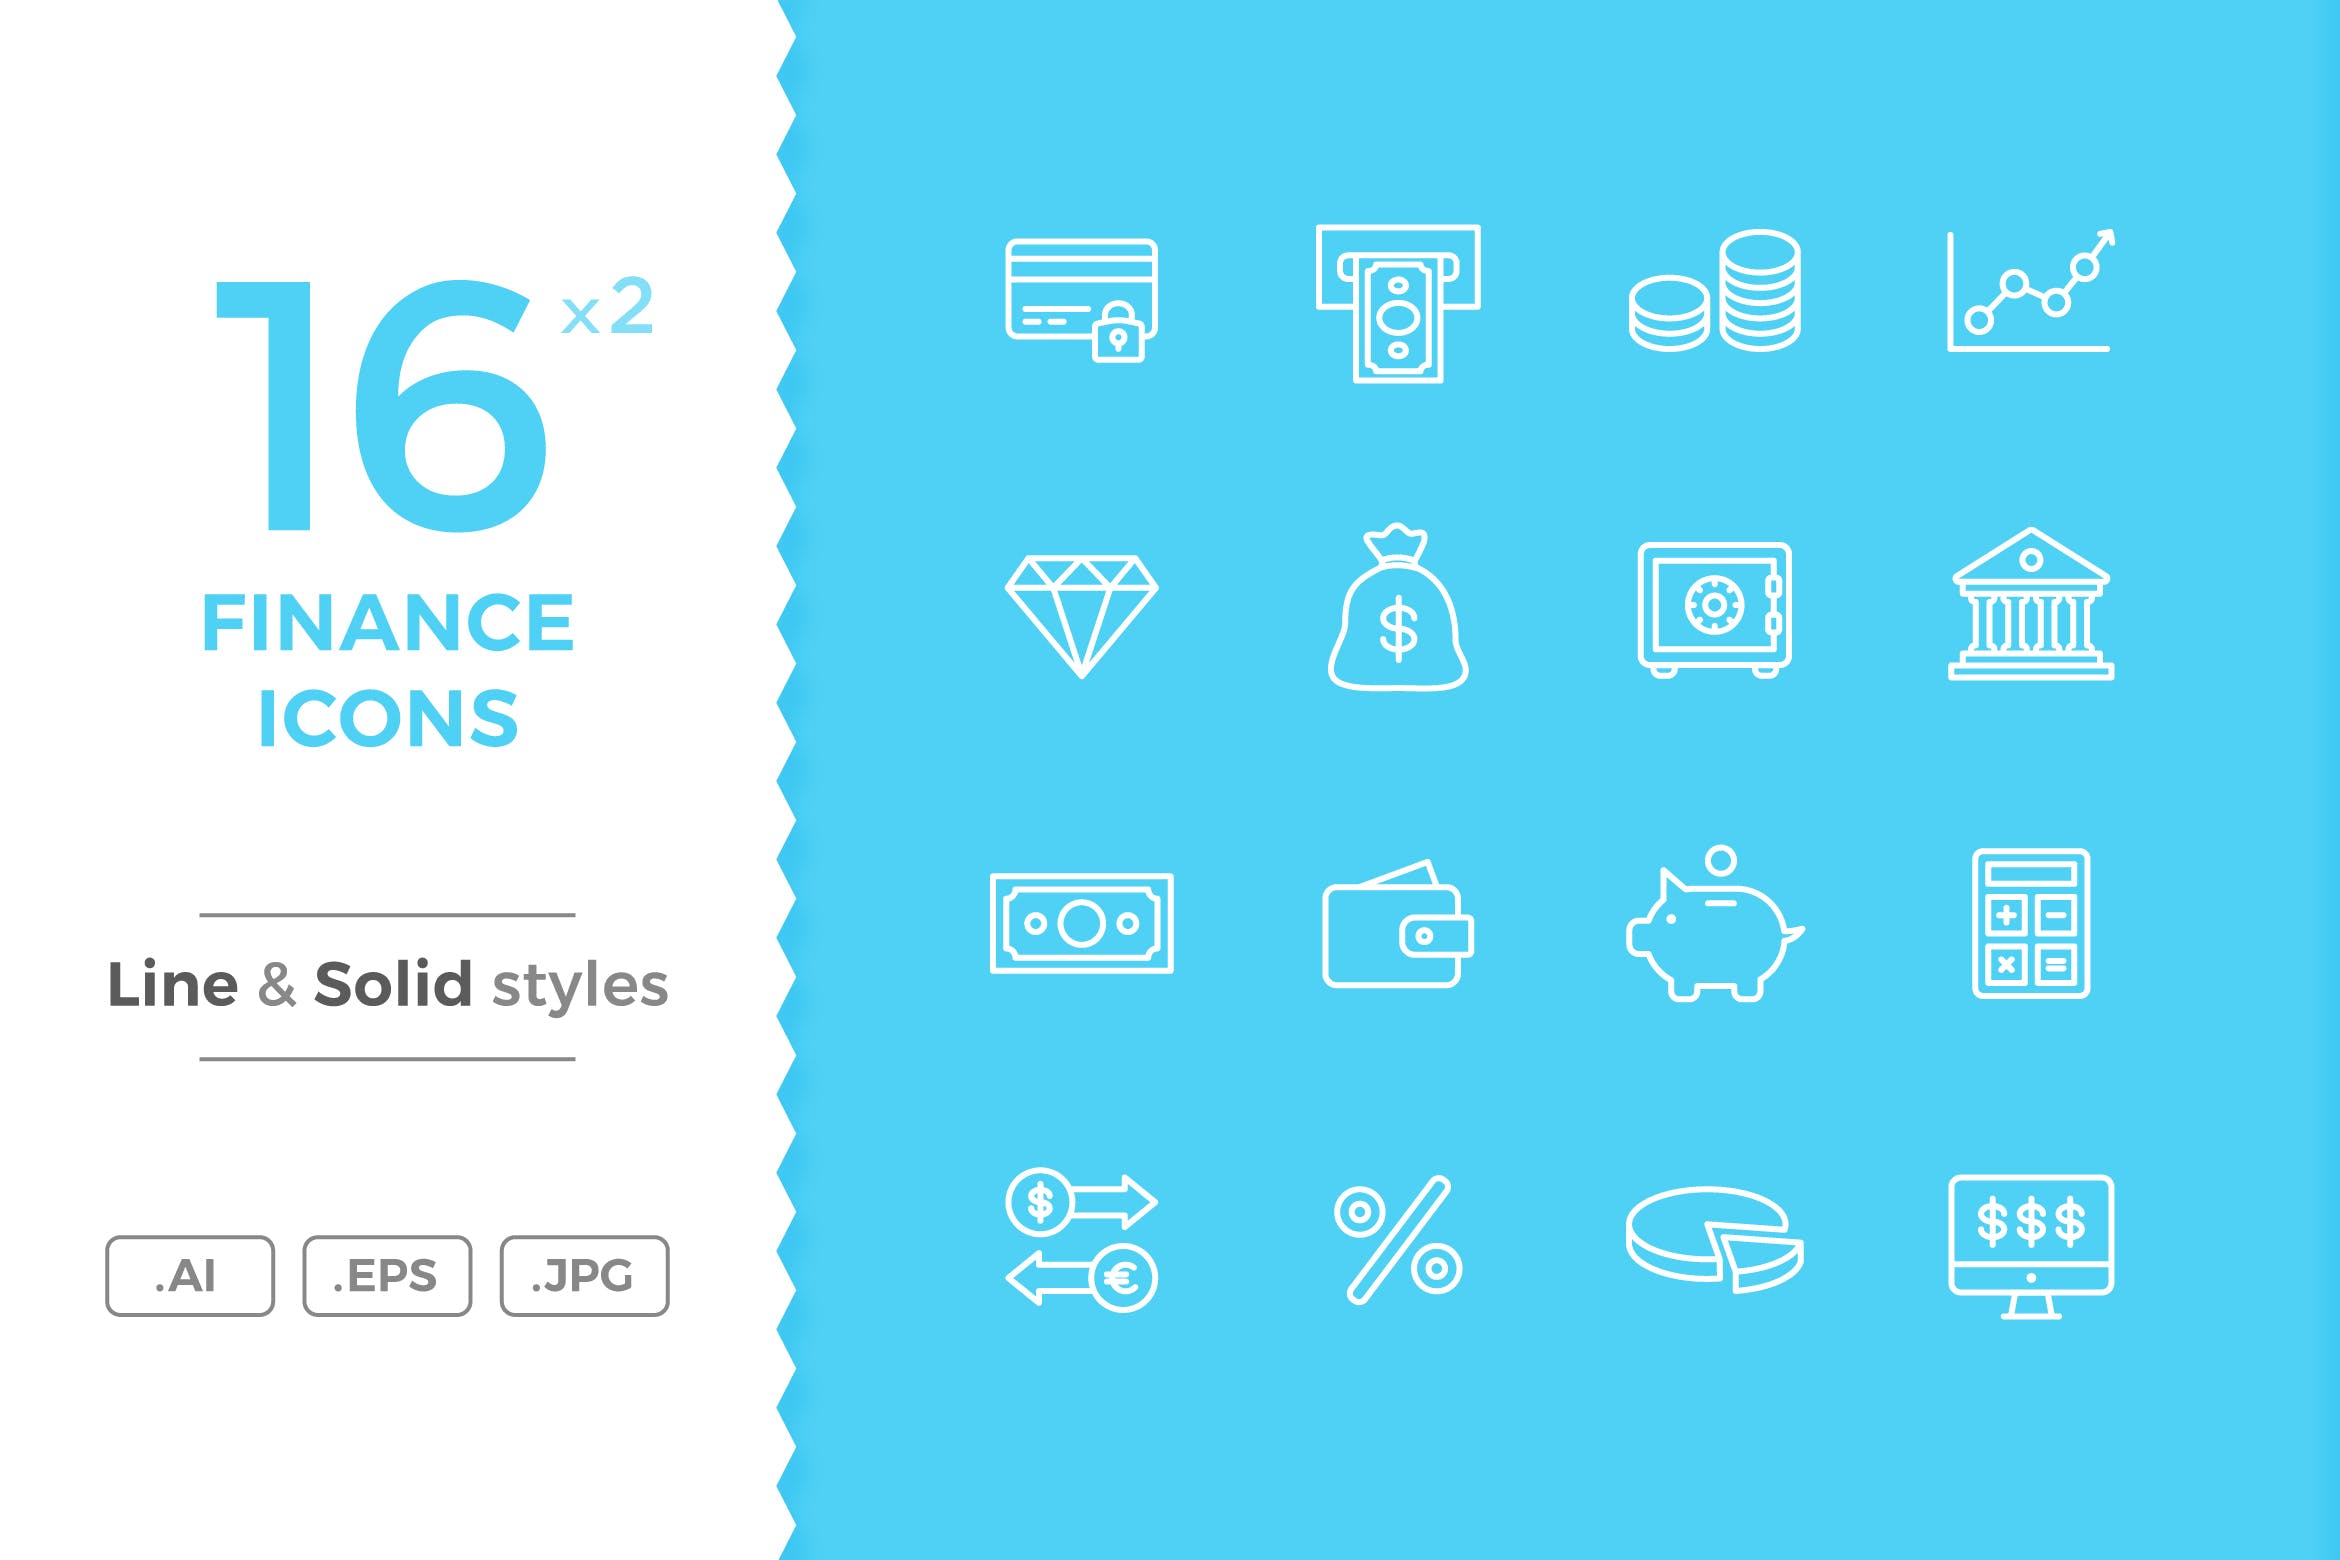 16枚金融主题矢量线性&Solid蚂蚁素材精选图标 Finance Icons插图